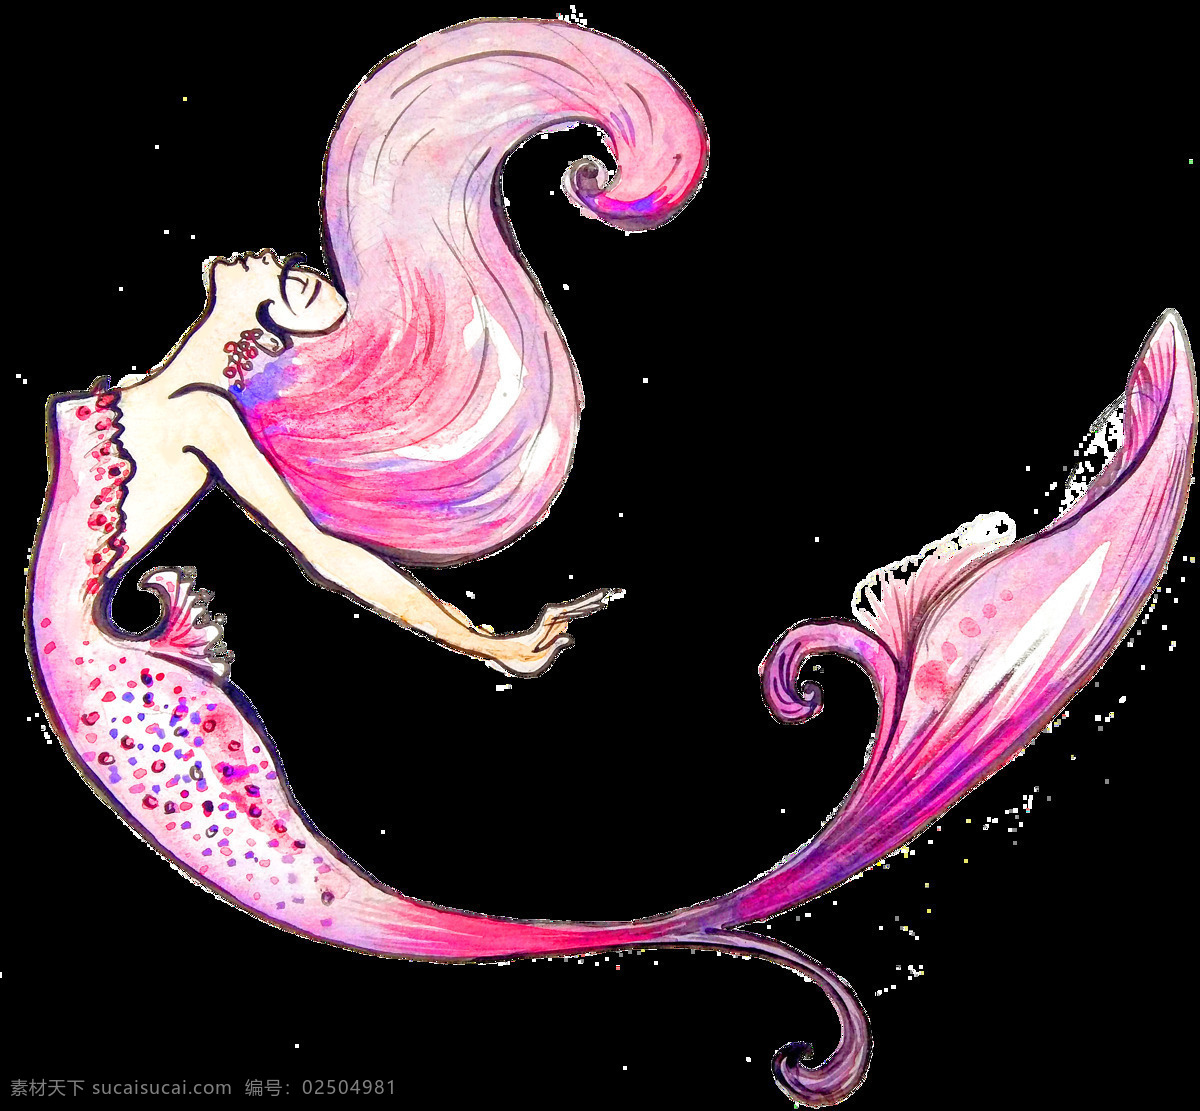 优美 彩色 美人鱼 元素 粉色 蓝色 手绘 海报素材 免扣素材 广告素材